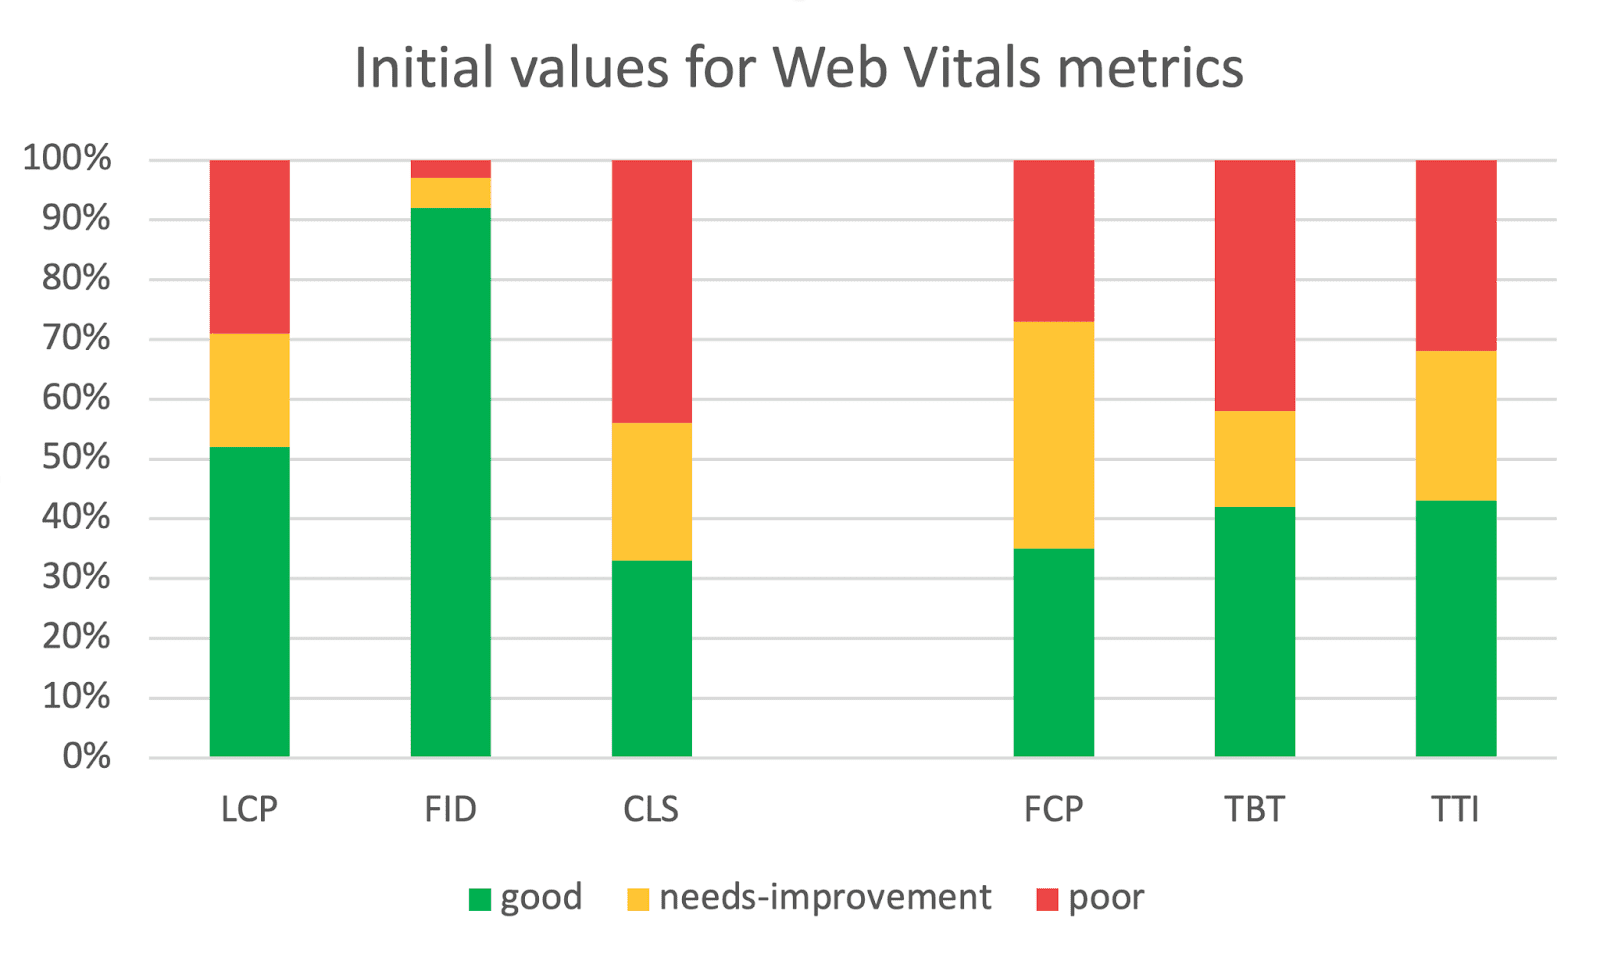 Core Web Vitals ก่อนการเพิ่มประสิทธิภาพมีการแสดงผลประมาณ 1/3 ของผู้ใช้ในกลุ่มที่มีประสิทธิภาพต่ำ